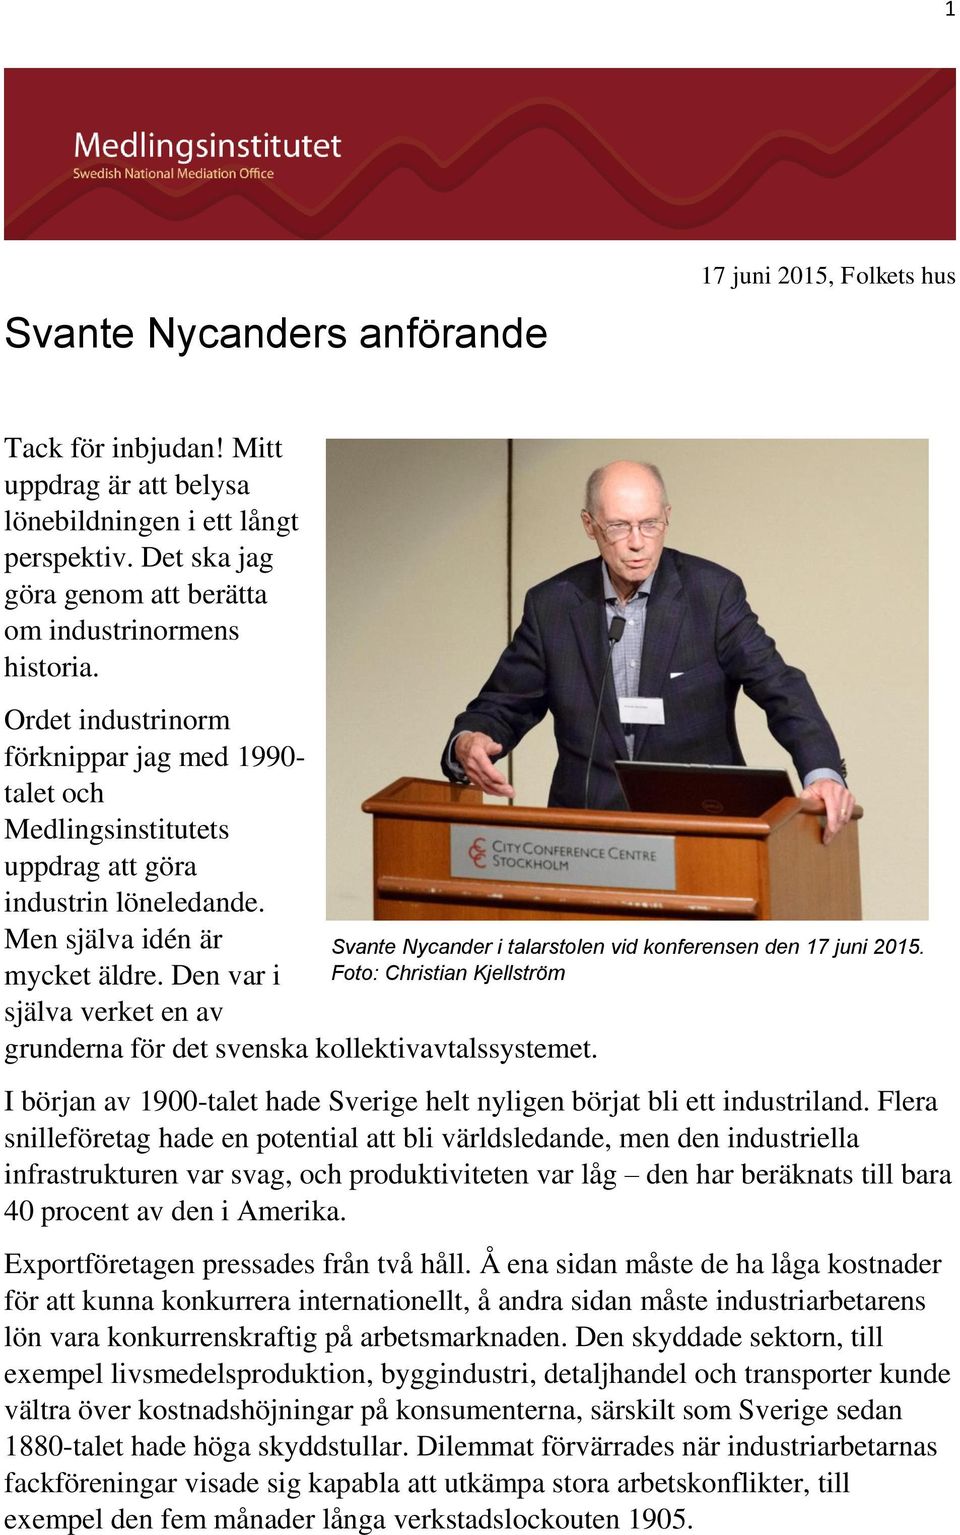 Men själva idén är mycket äldre. Den var i själva verket en av grunderna för det svenska kollektivavtalssystemet. Svante Nycander i talarstolen vid konferensen den 17 juni 2015.